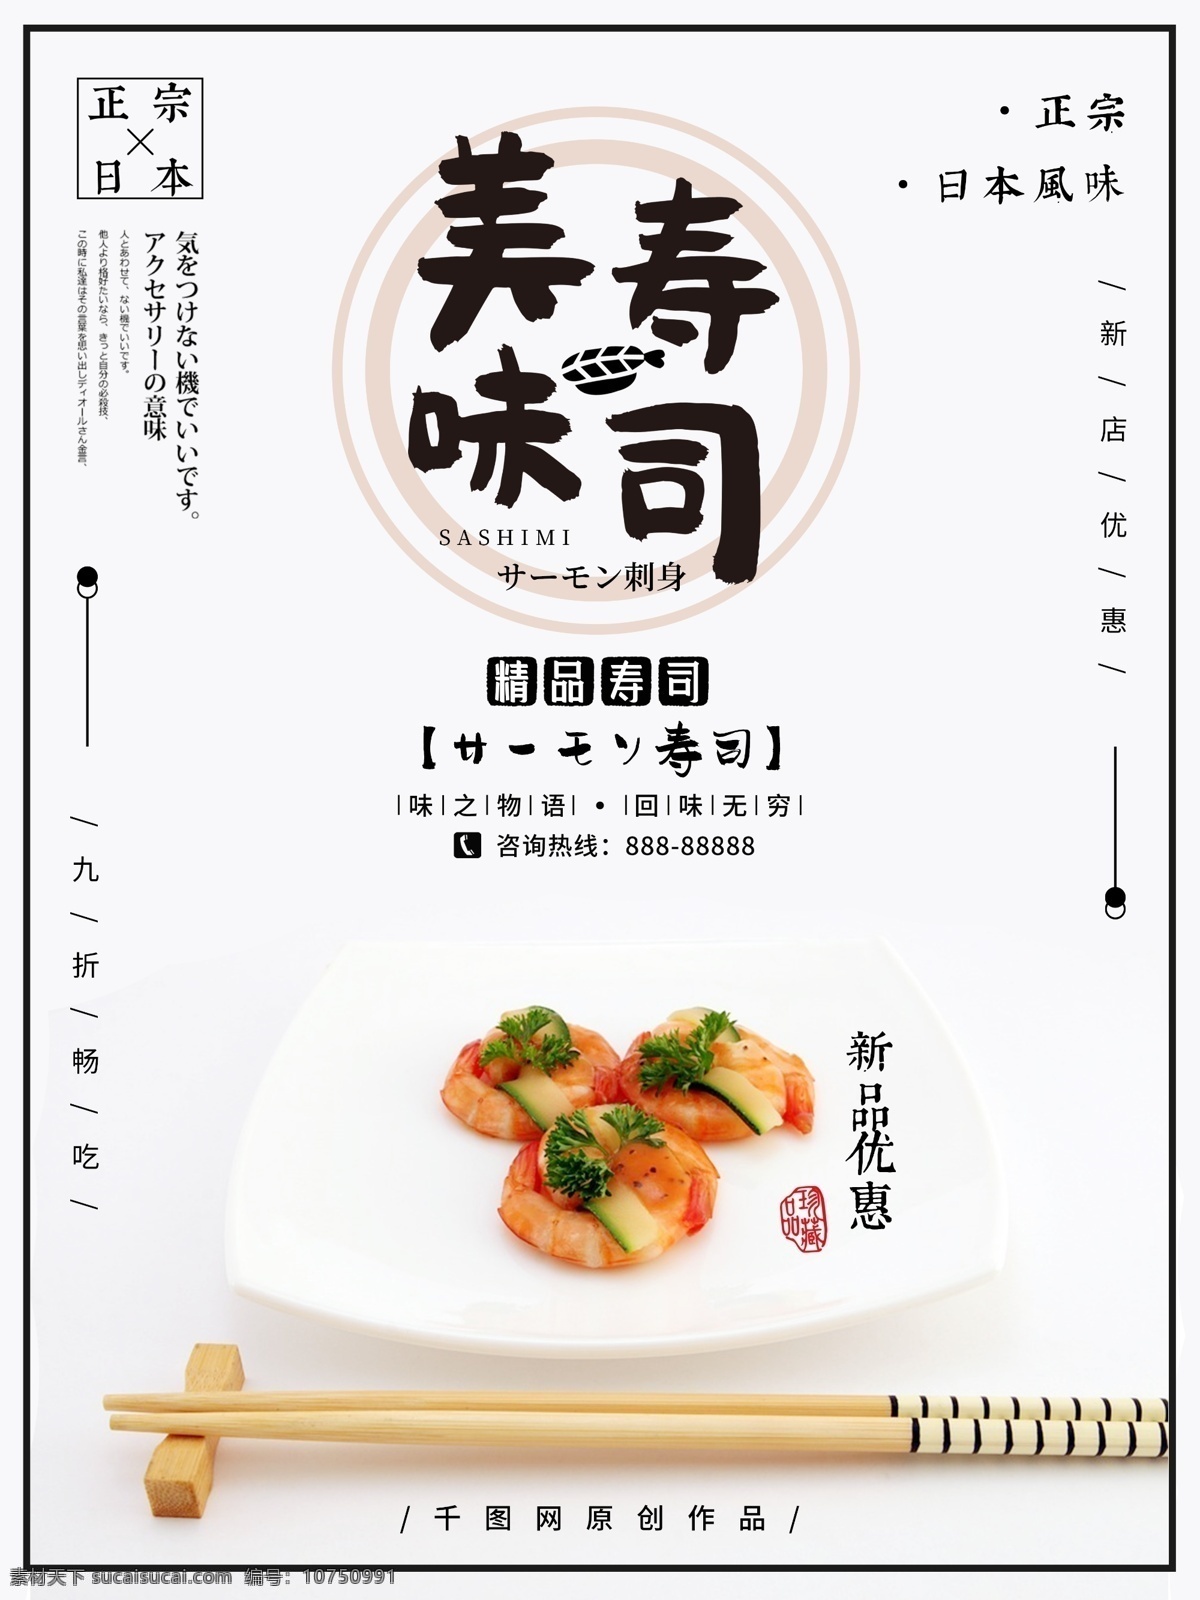 日式 极 简 风日 料 寿司 促销 海报 美食 黑白 简约 创意 日本料理 美味 日料 极简 和风